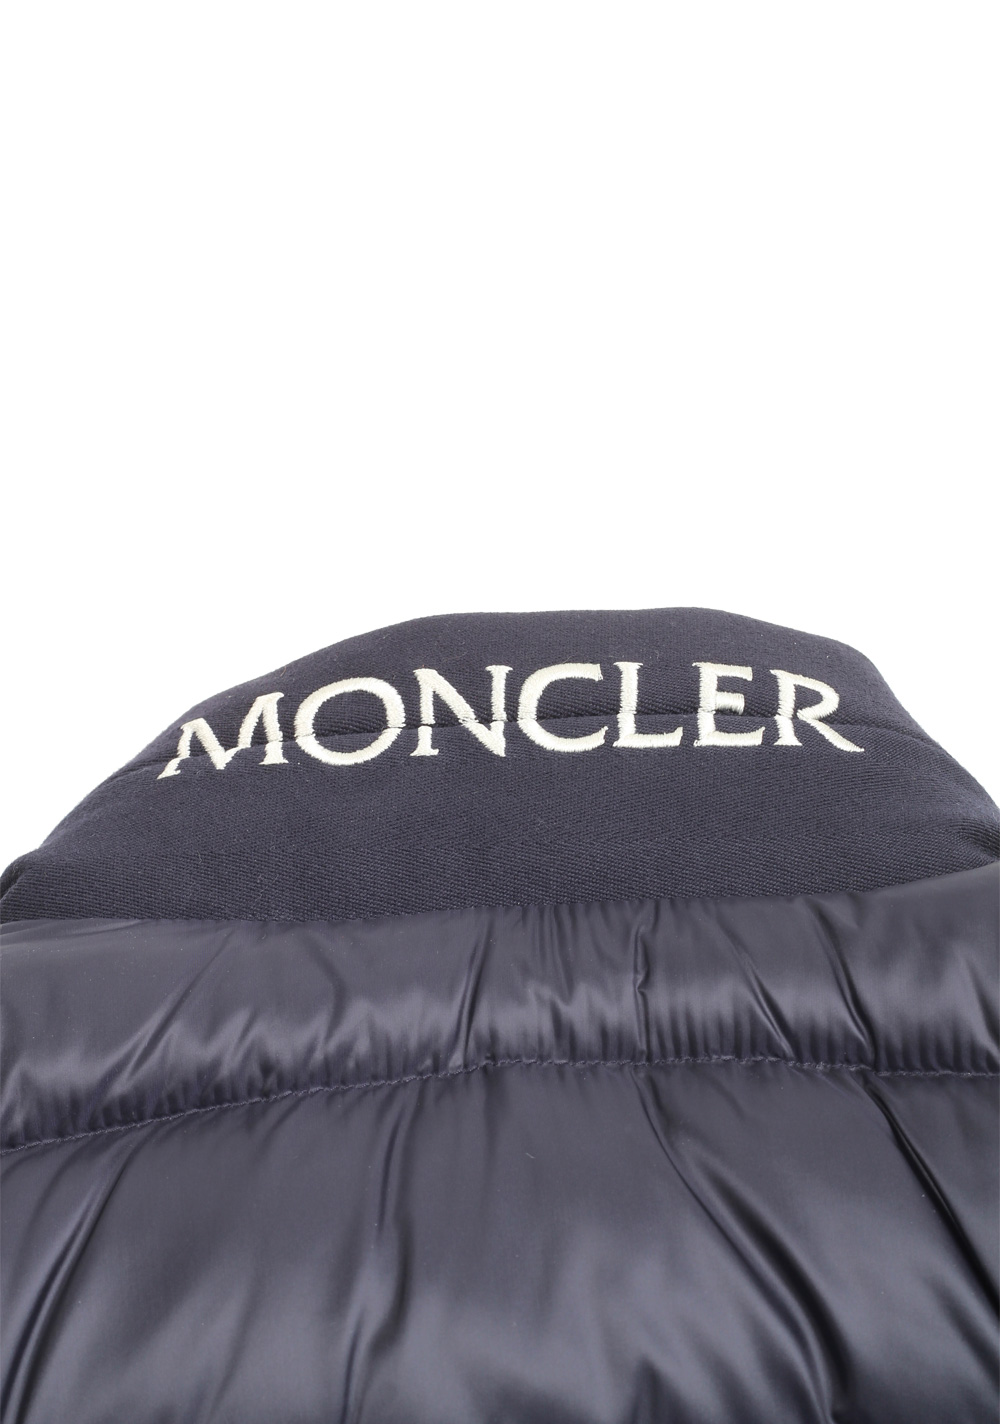 Moncler Blue Rodez Doudoune Jacket Coat Size 1 / S / 46 / 36 U.S. | Costume Limité